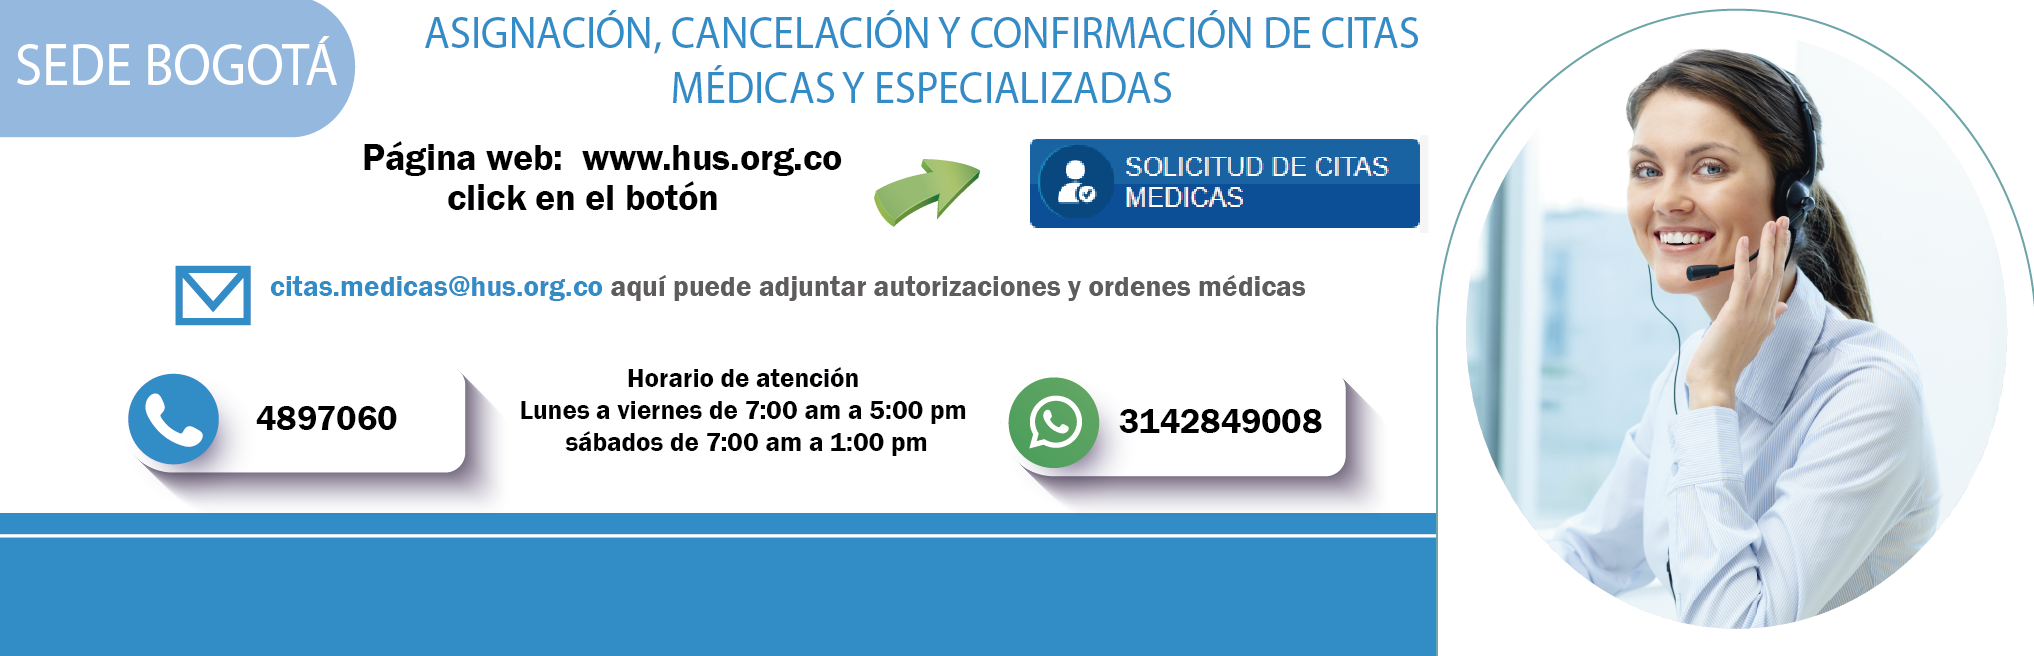 Bogota asignacion confirmacion y cancelacion de citas medicas